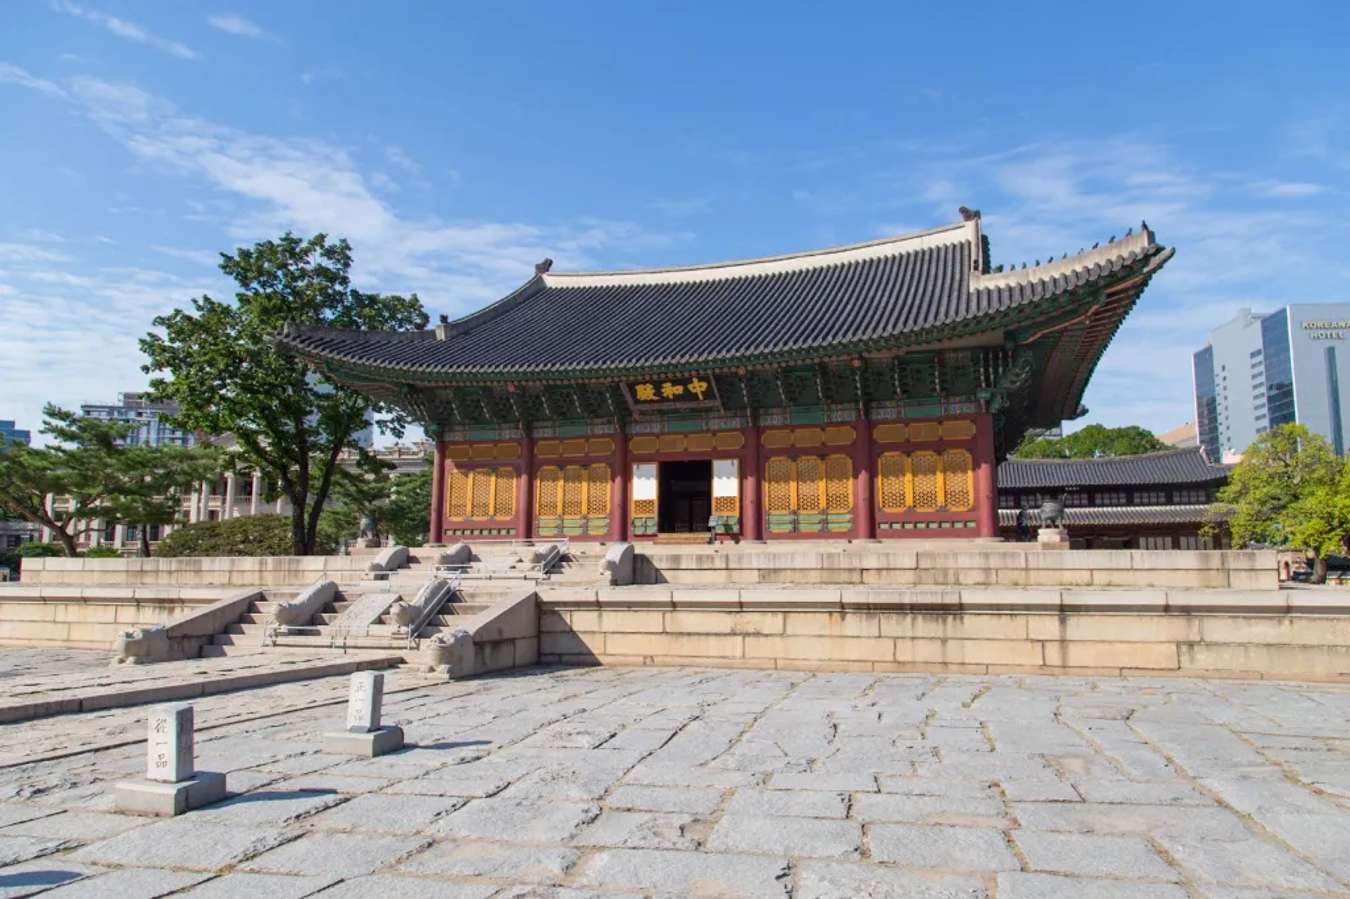 Cung điện truyền thống của Hàn Quốc - Cung điện Deoksugung 